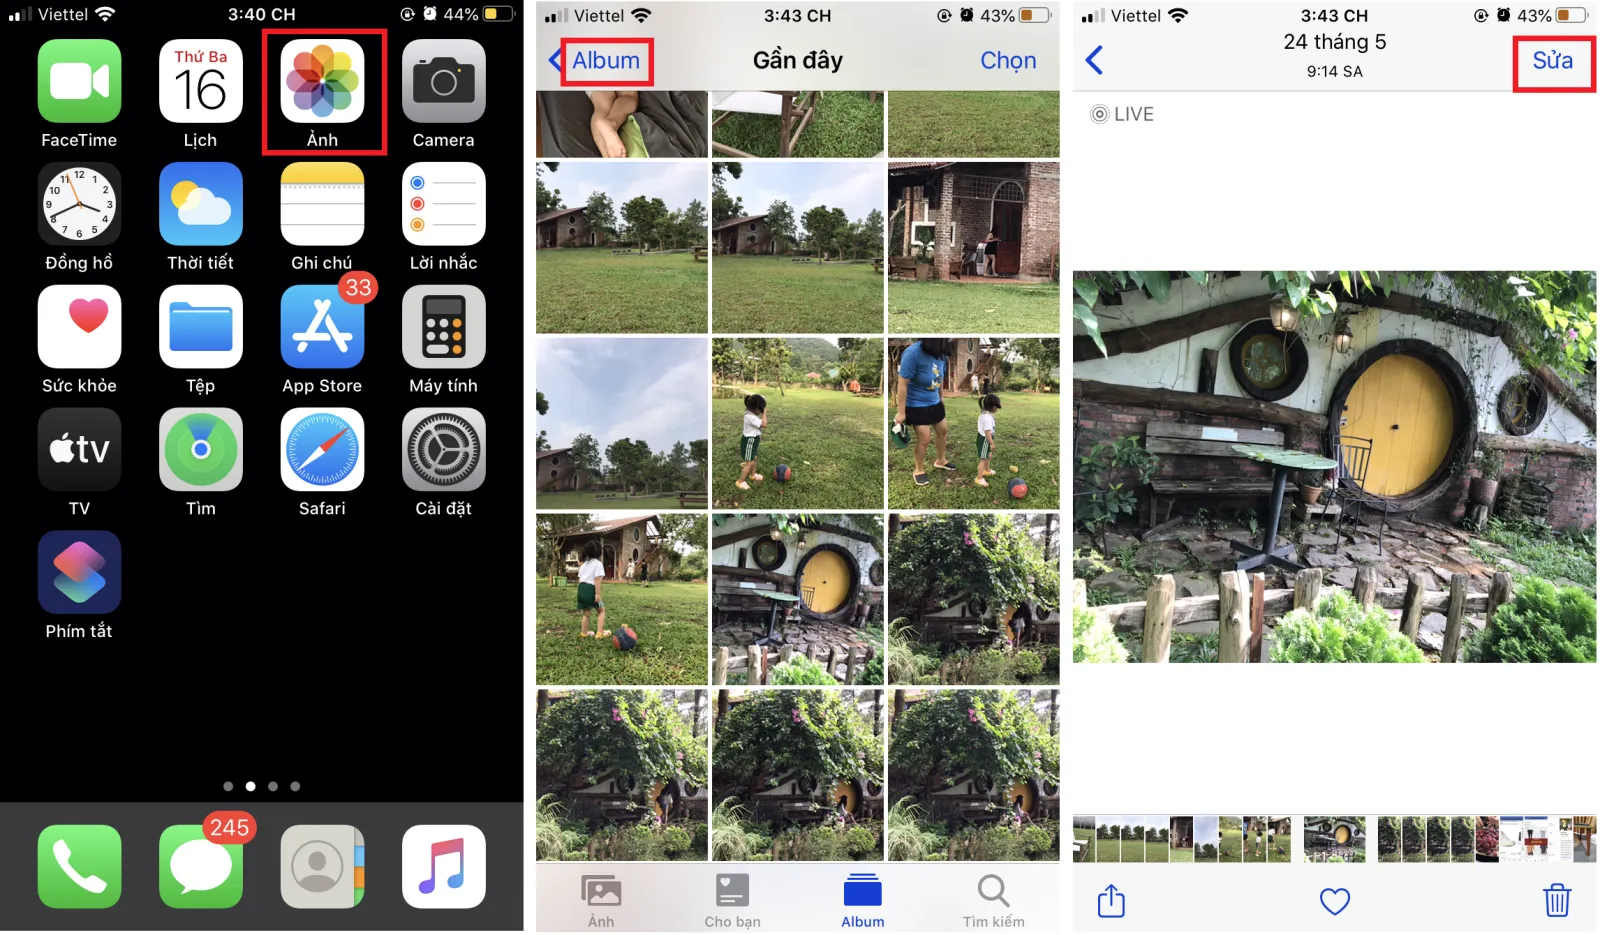 Cách gỡ bỏ filter và hiệu ứng khỏi ảnh chụp trên iPhone